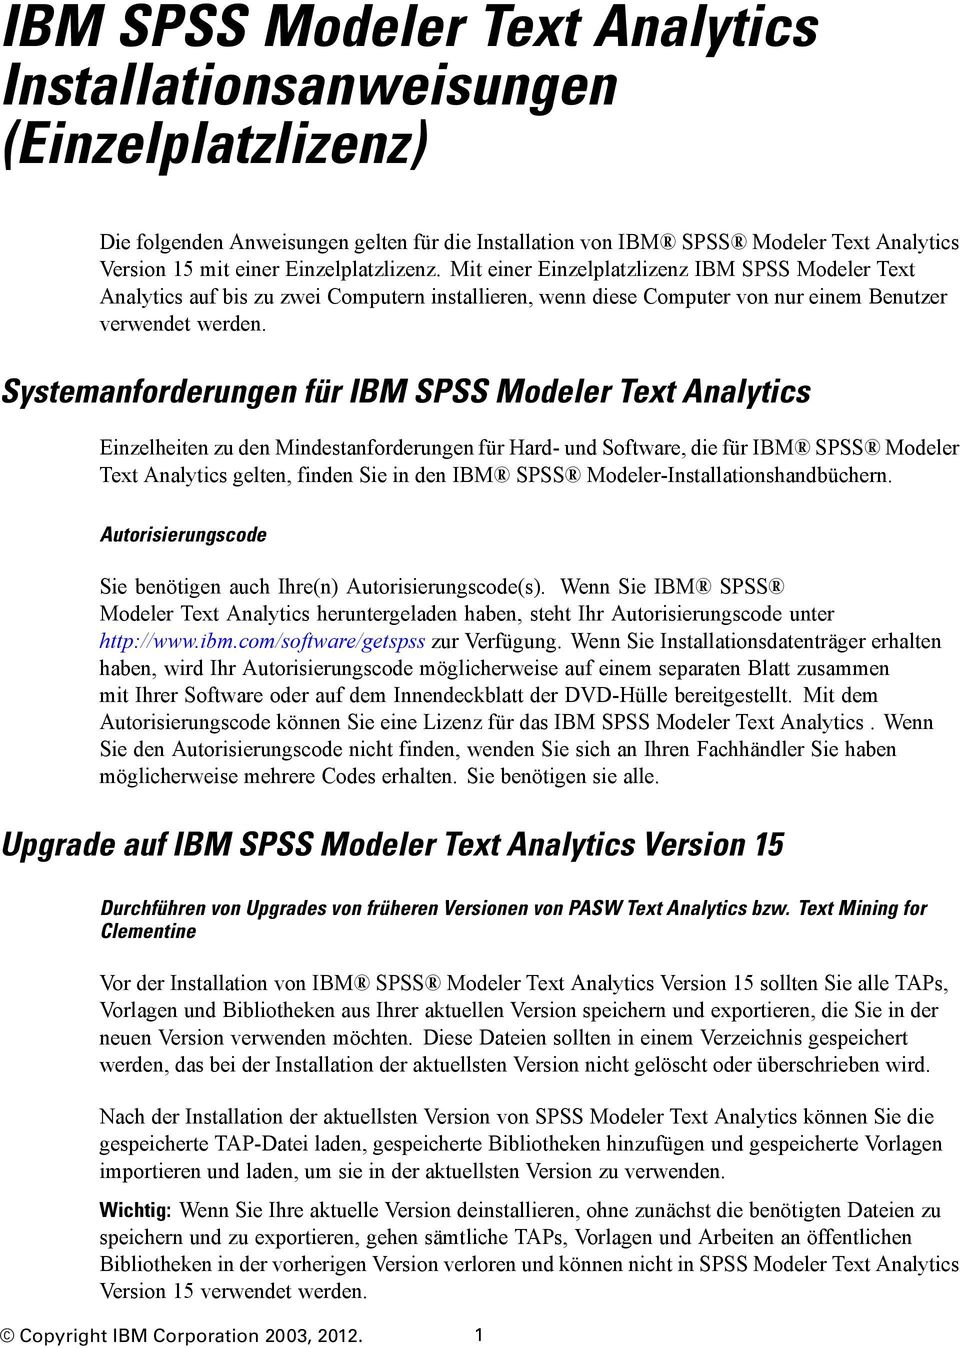 Systemanforderungen für IBM SPSS Modeler Text Analytics inzelheiten zu den Mindestanforderungen für Hard- und Software, die für IBM SPSS Modeler Text Analytics gelten, finden Sie in den IBM SPSS